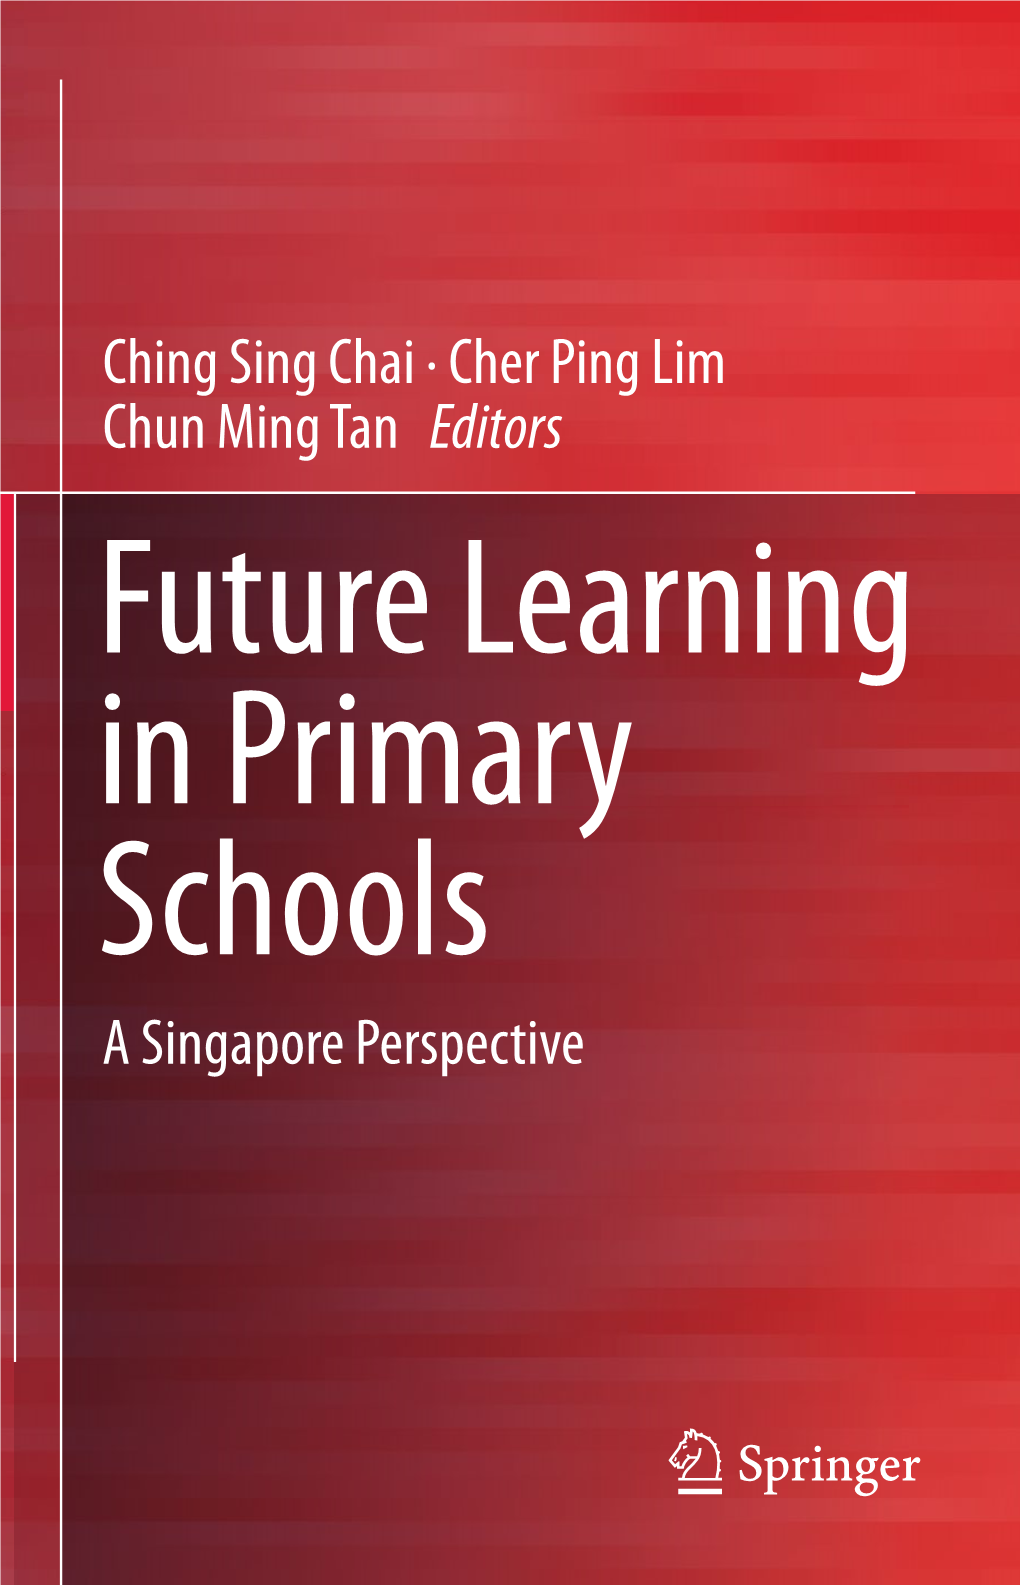 Cher Ping Lim Chun Ming Tan Editors a Singapore